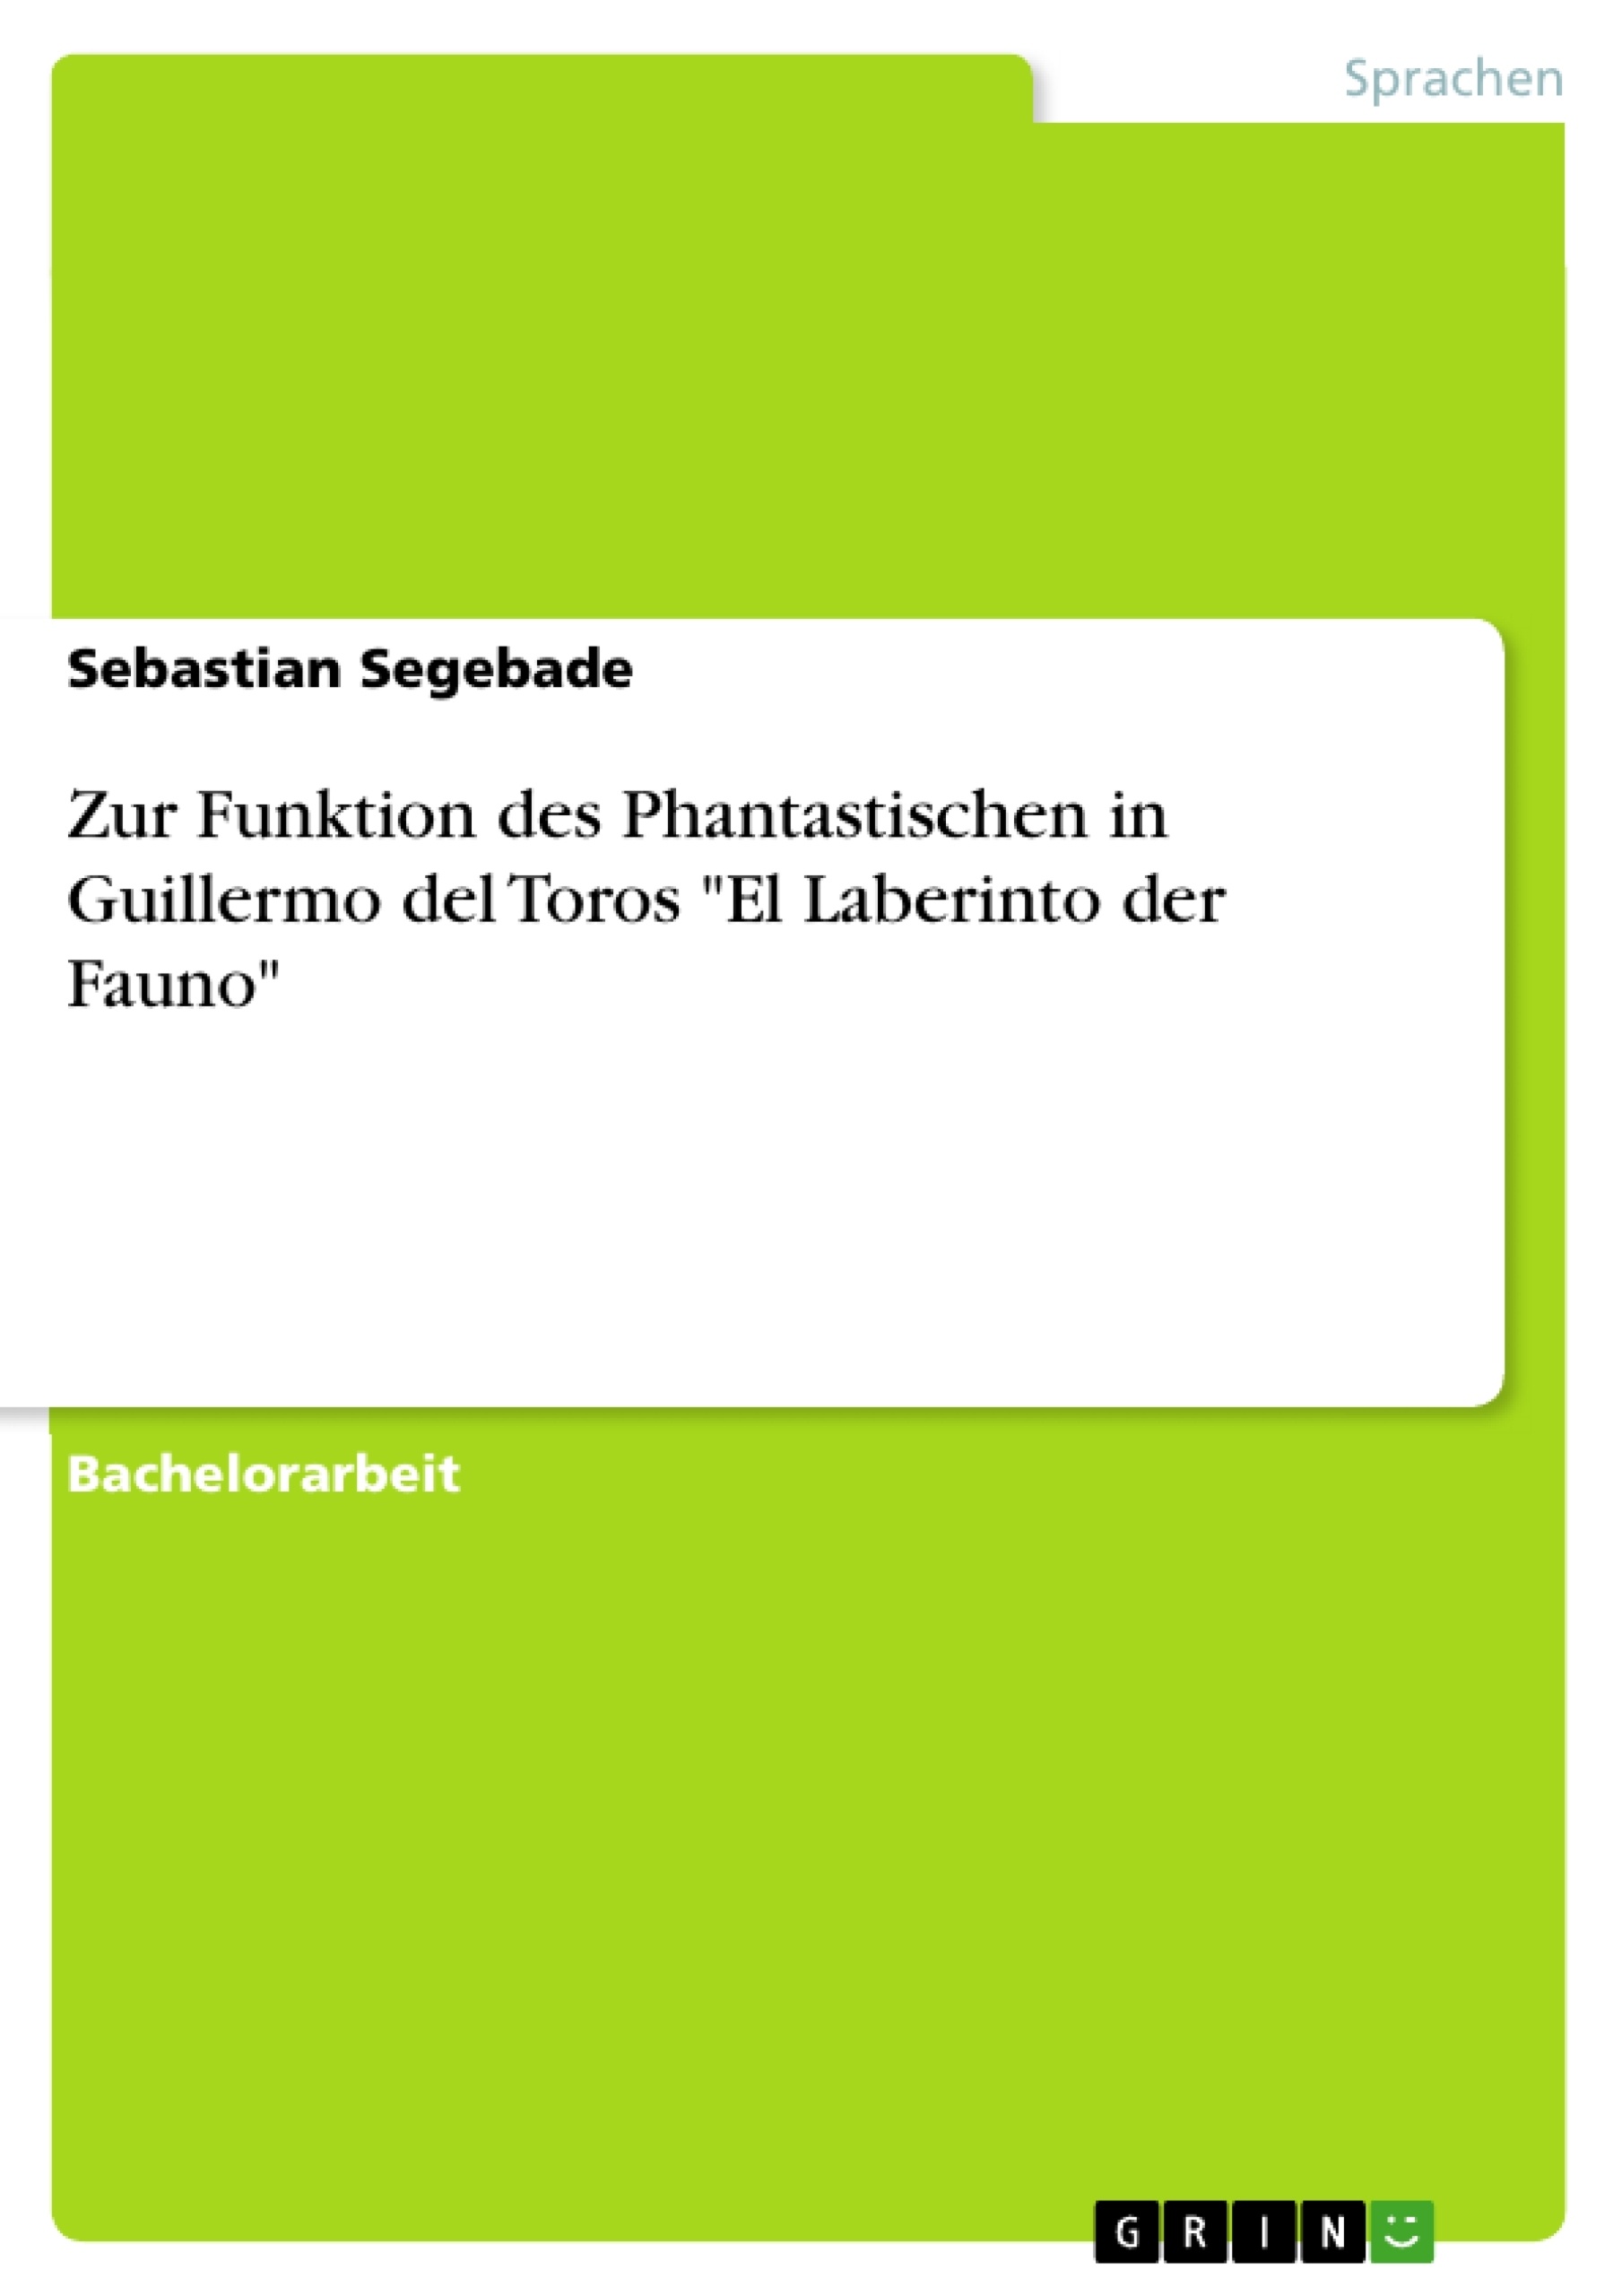 Título: Zur Funktion des Phantastischen in Guillermo del Toros "El Laberinto der Fauno"